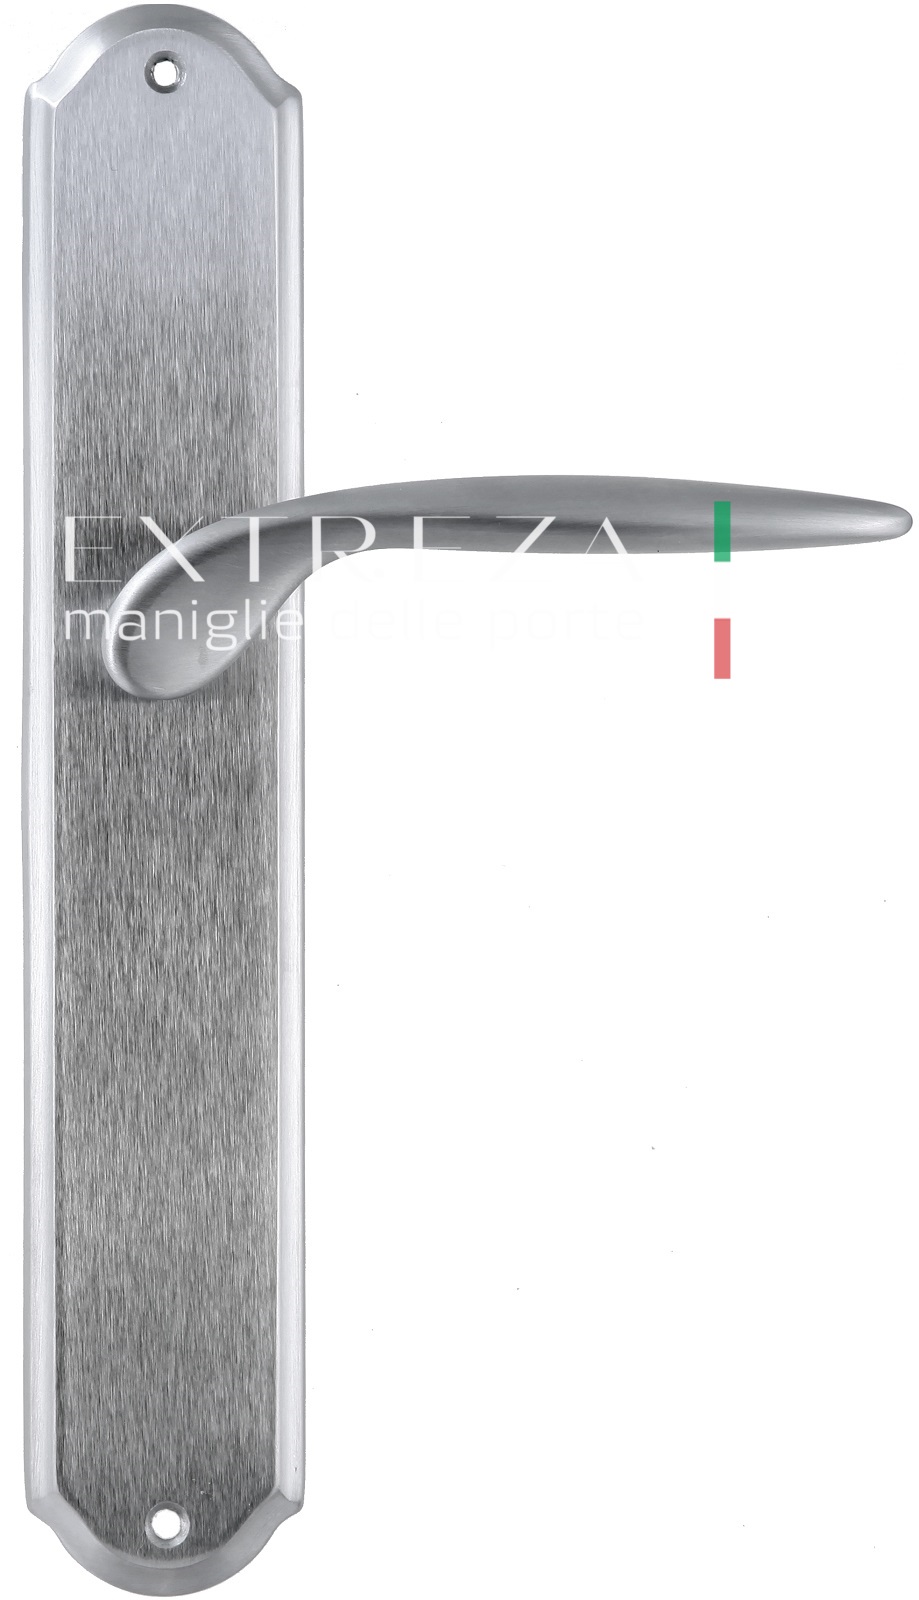 Ручка дверная Extreza CALIPSO (Калипсо) 311 на планке PL01 PASS матовый хром F05